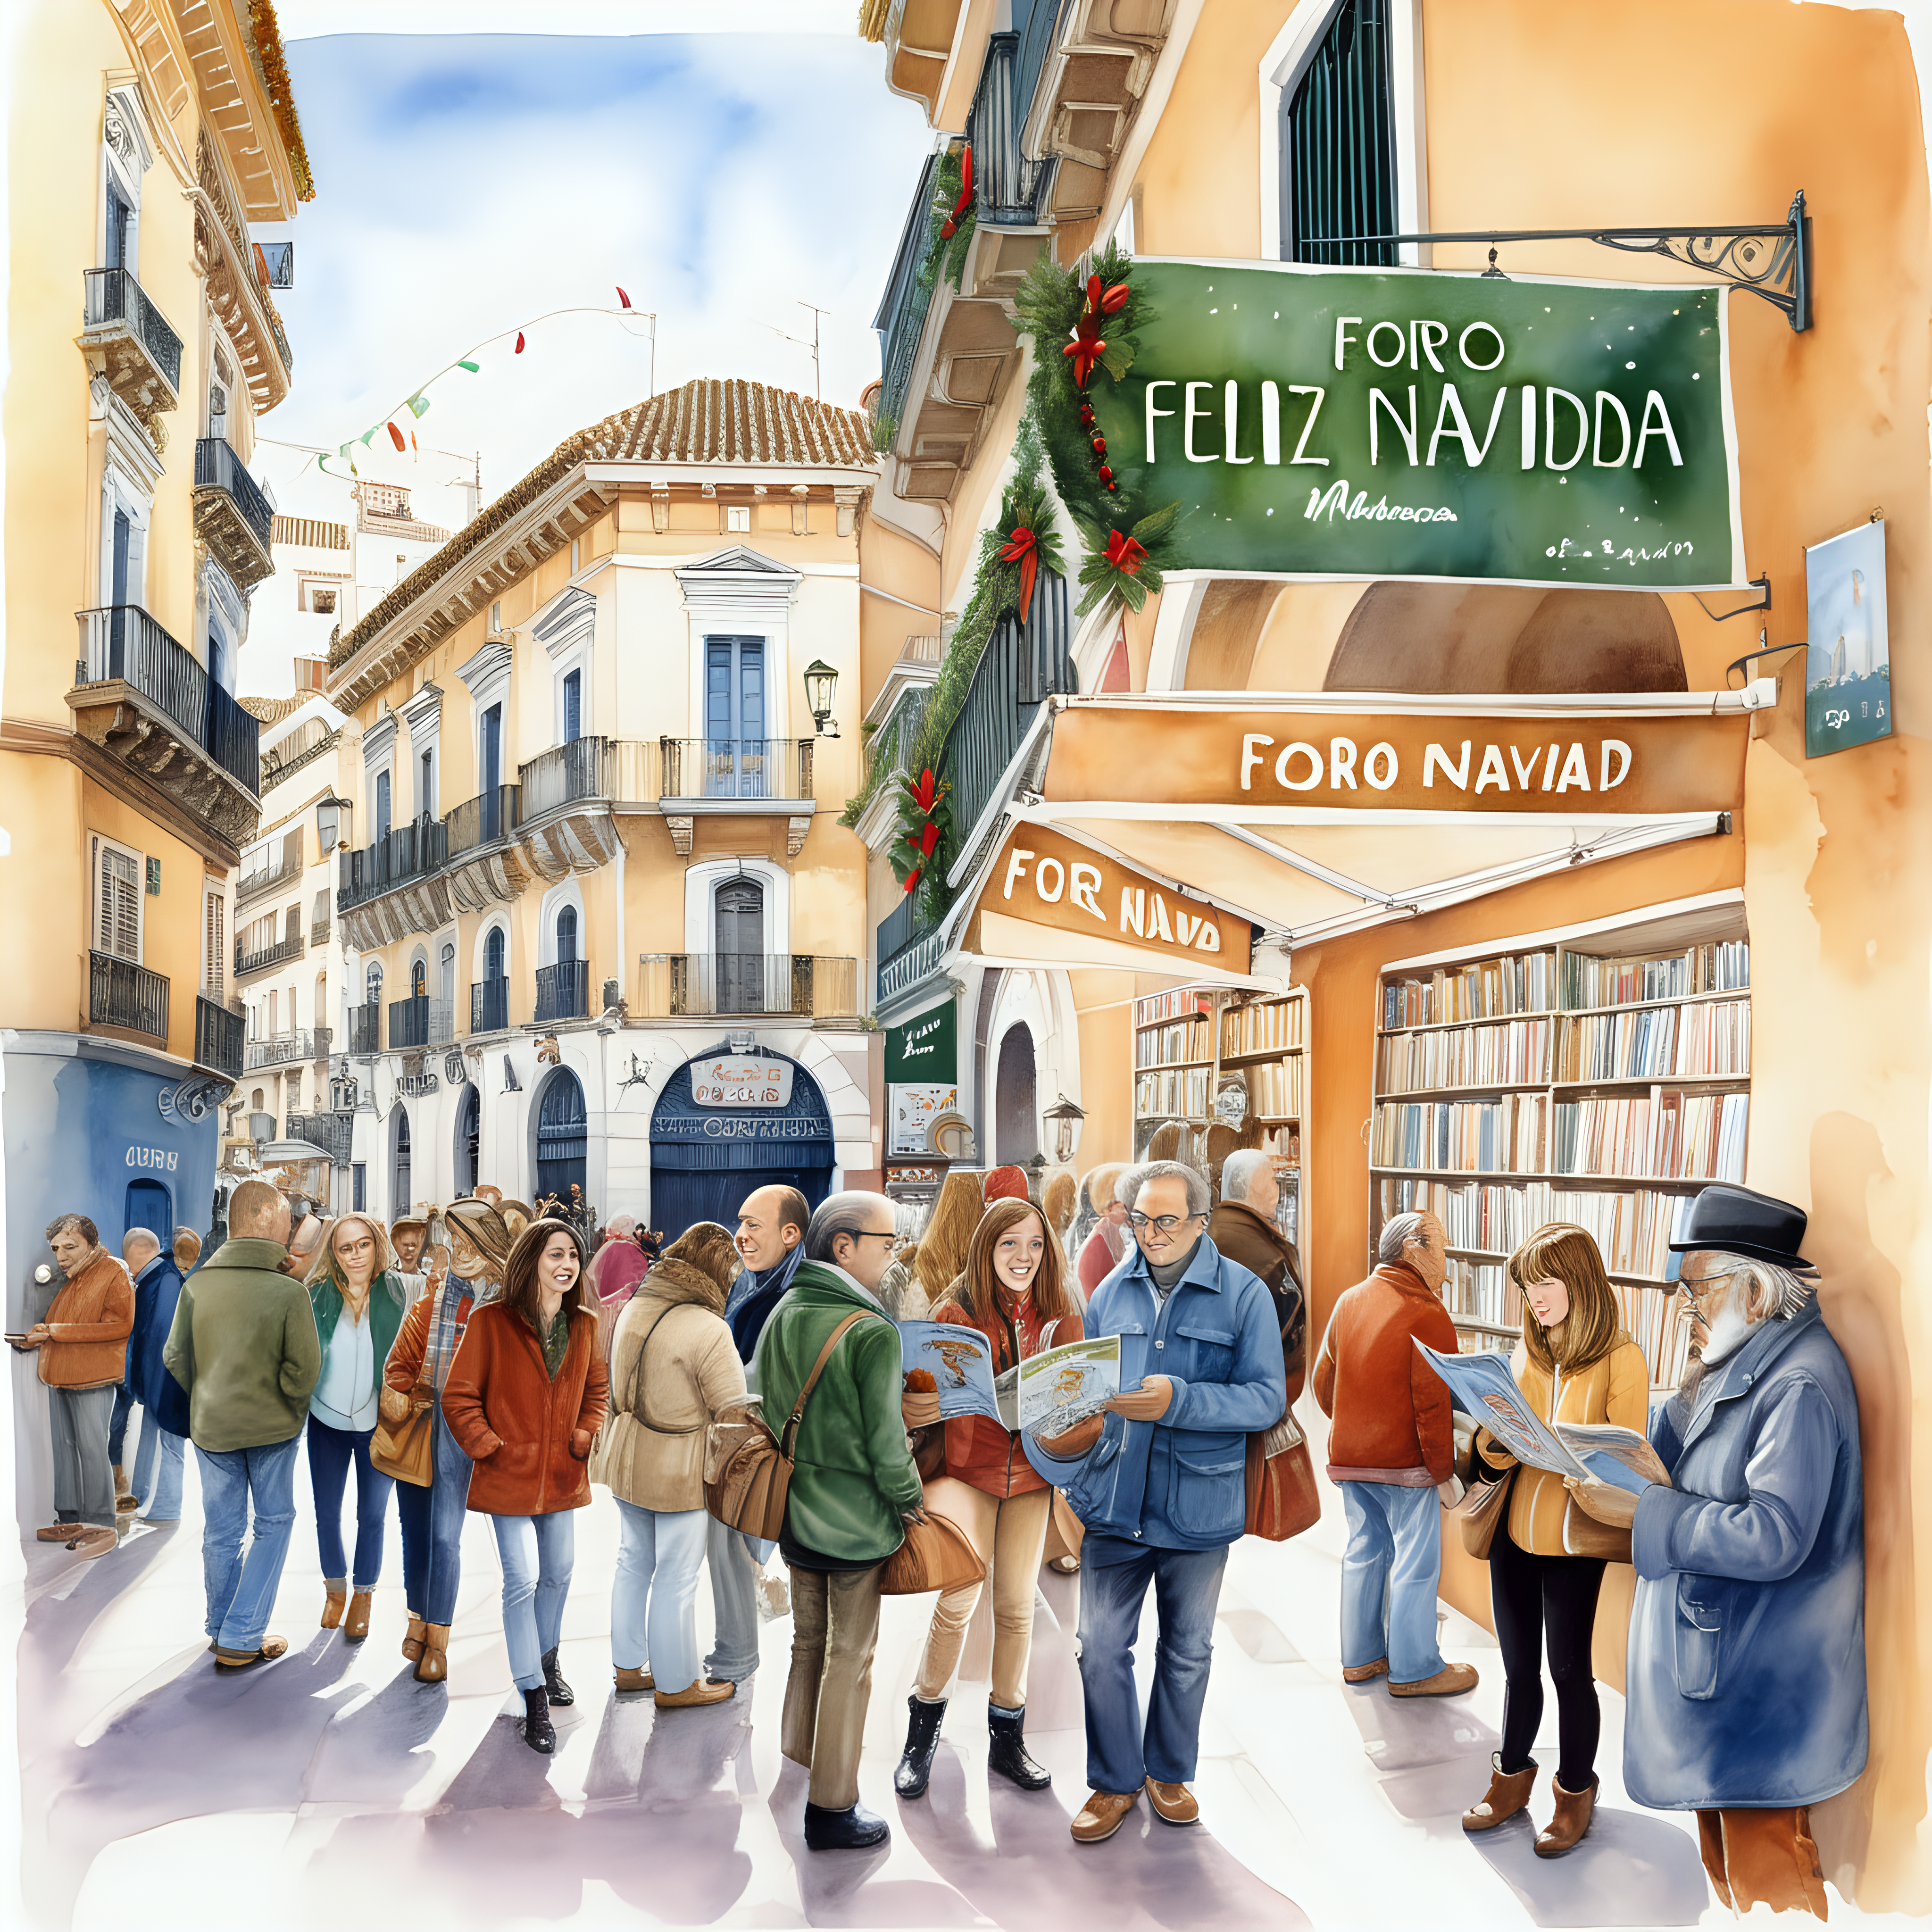 Calles de Málaga con letrero "foro Bd, feliz navidad" al principio.Ambiente navideño, Luego multitud feliz leyendo comics, escaparate librería, estilo milo manara,acuarela